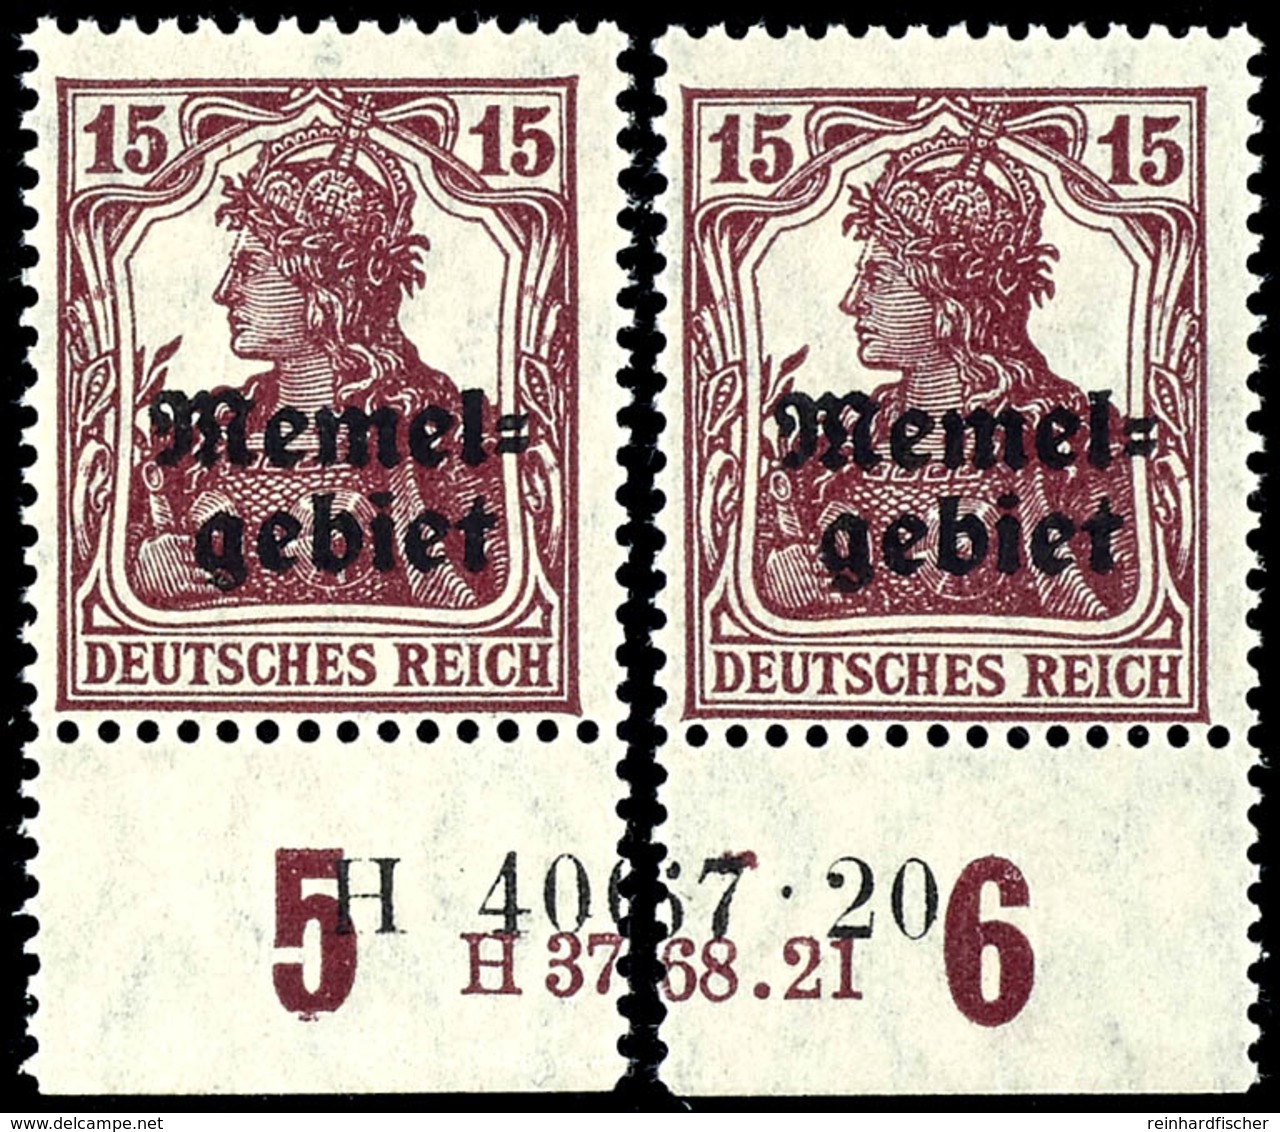 15 Pfennig Germania Mit Aufdruck, Senkrecht Geriffelte Gummierung, Postfrisch, Geteiltes Unterrandpaar Mit HAN-U 3768.21 - Memel (Klaïpeda) 1923